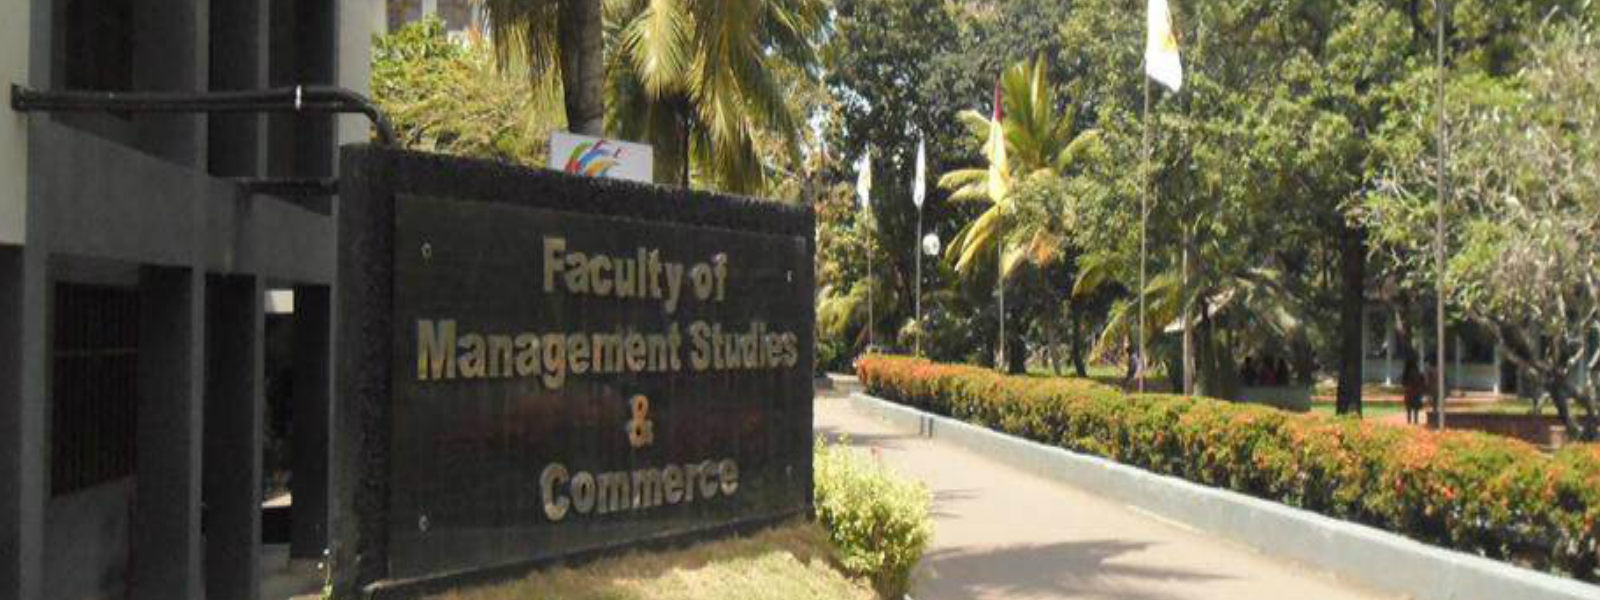 Management faculty of Japura closed 